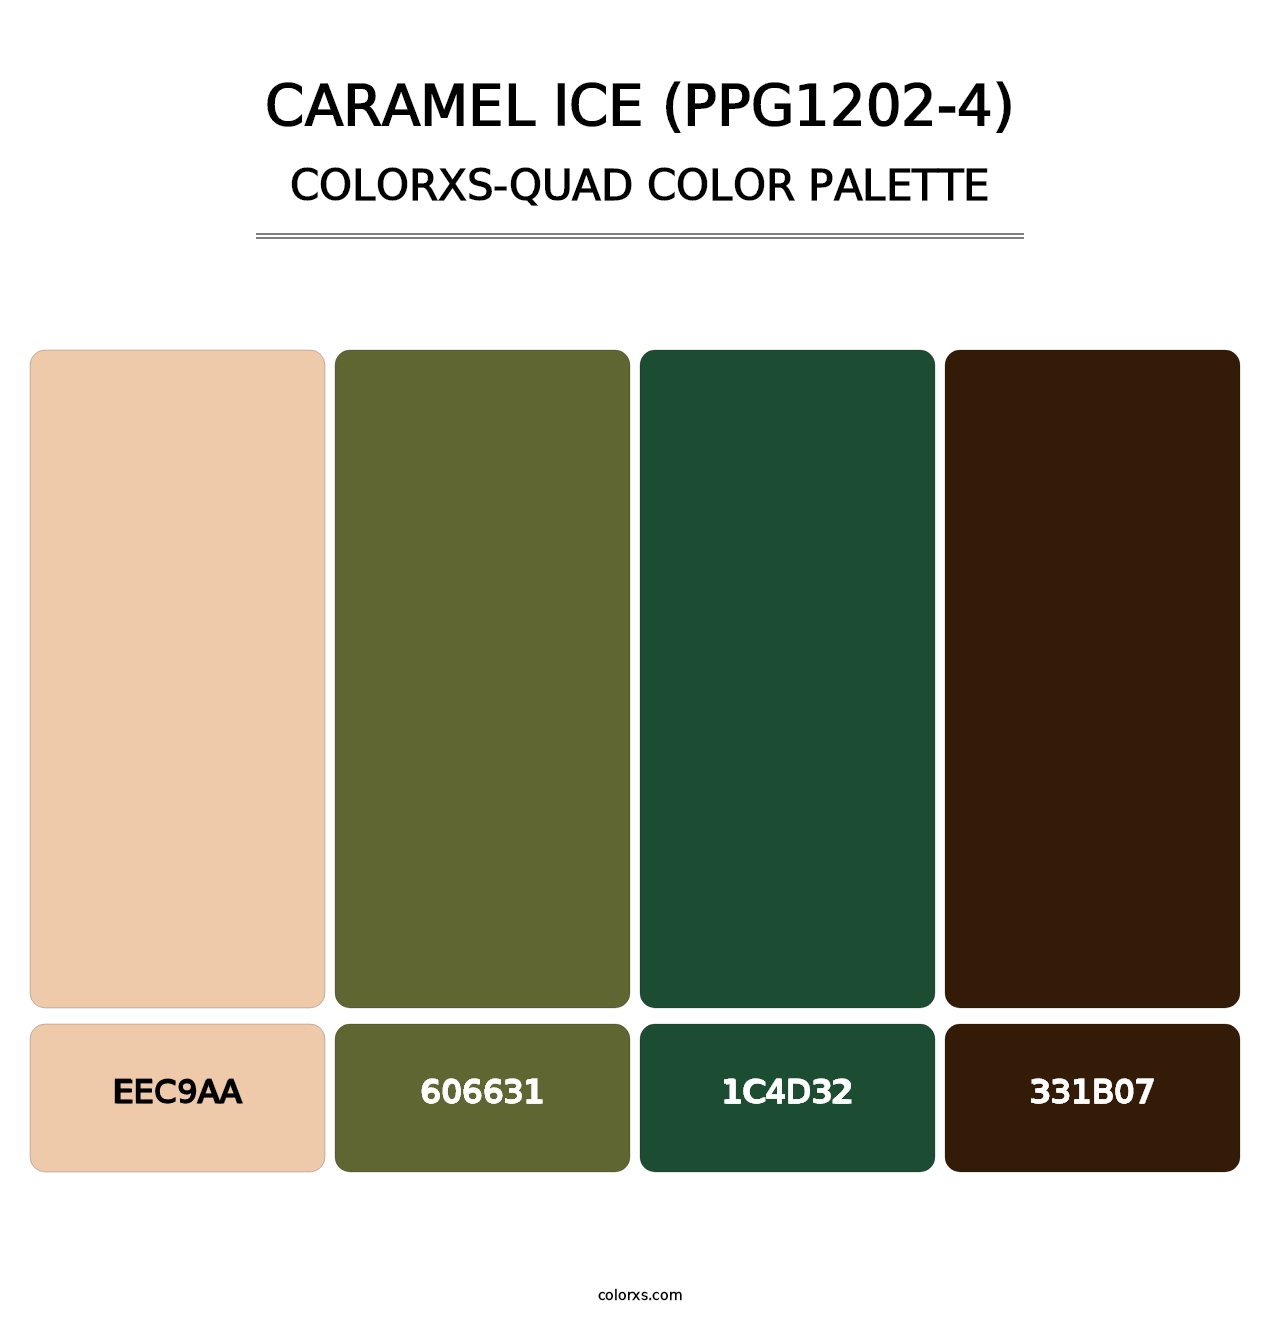 Caramel Ice (PPG1202-4) - Colorxs Quad Palette